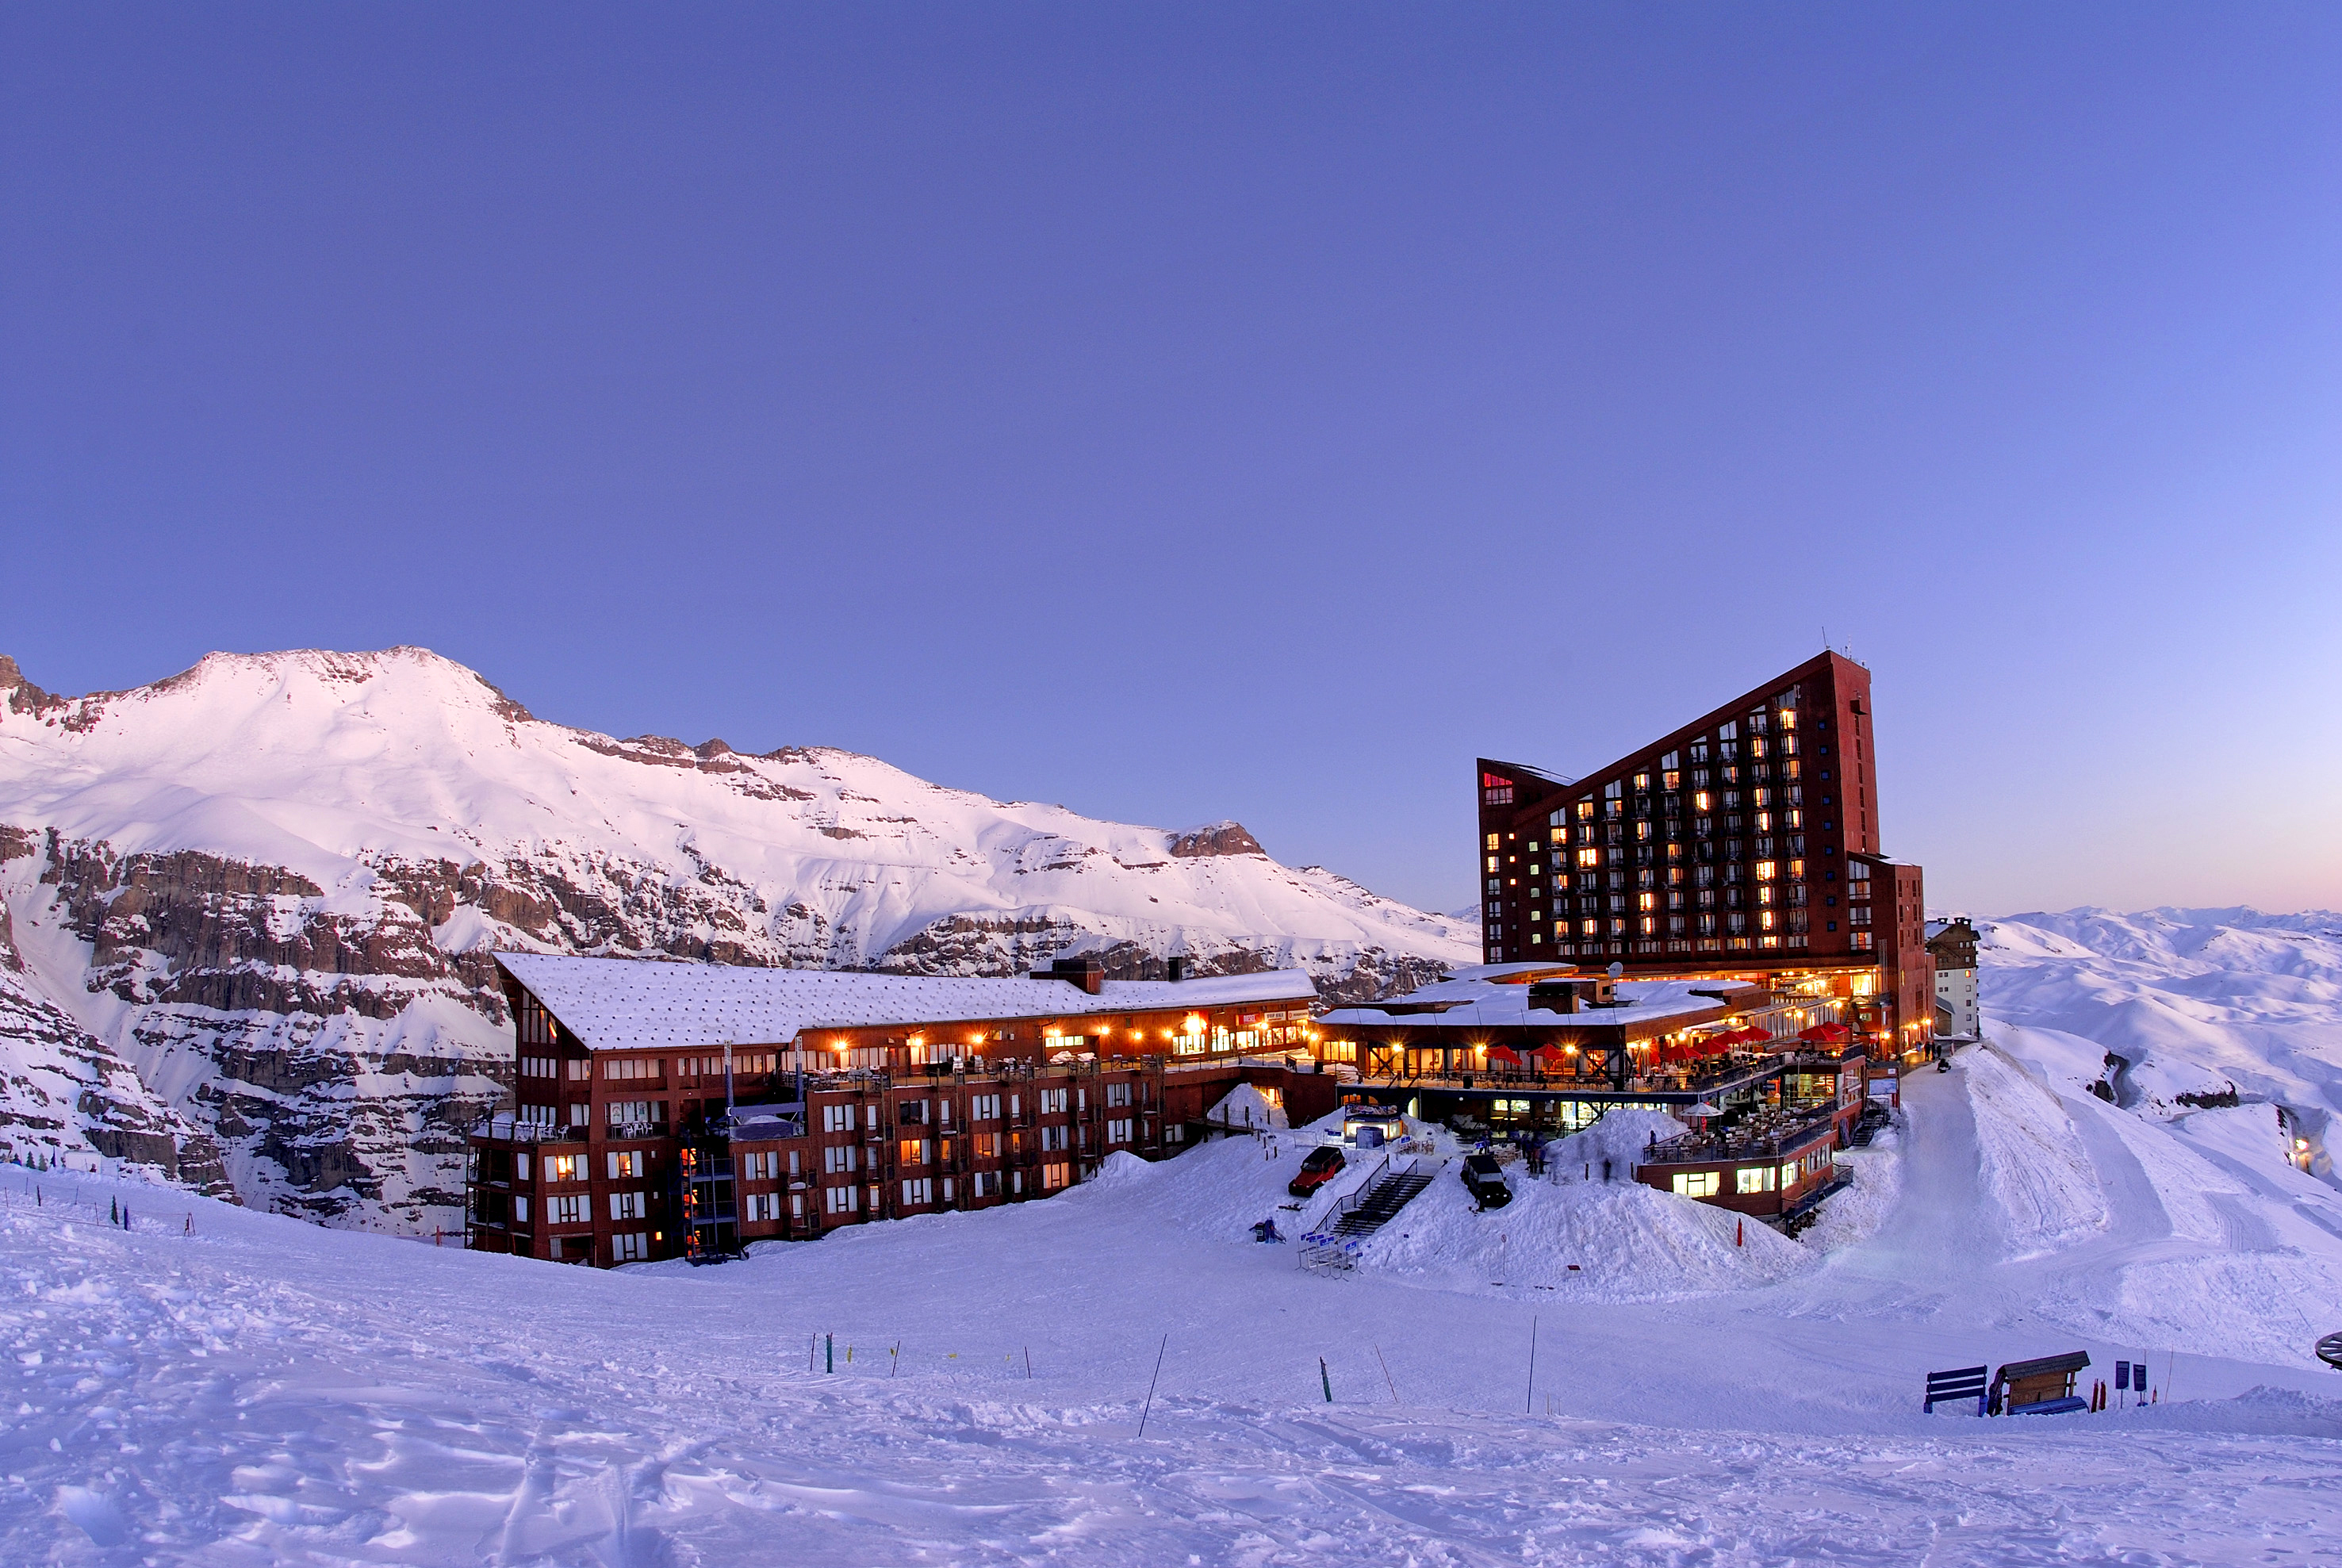 Valle nevado resort